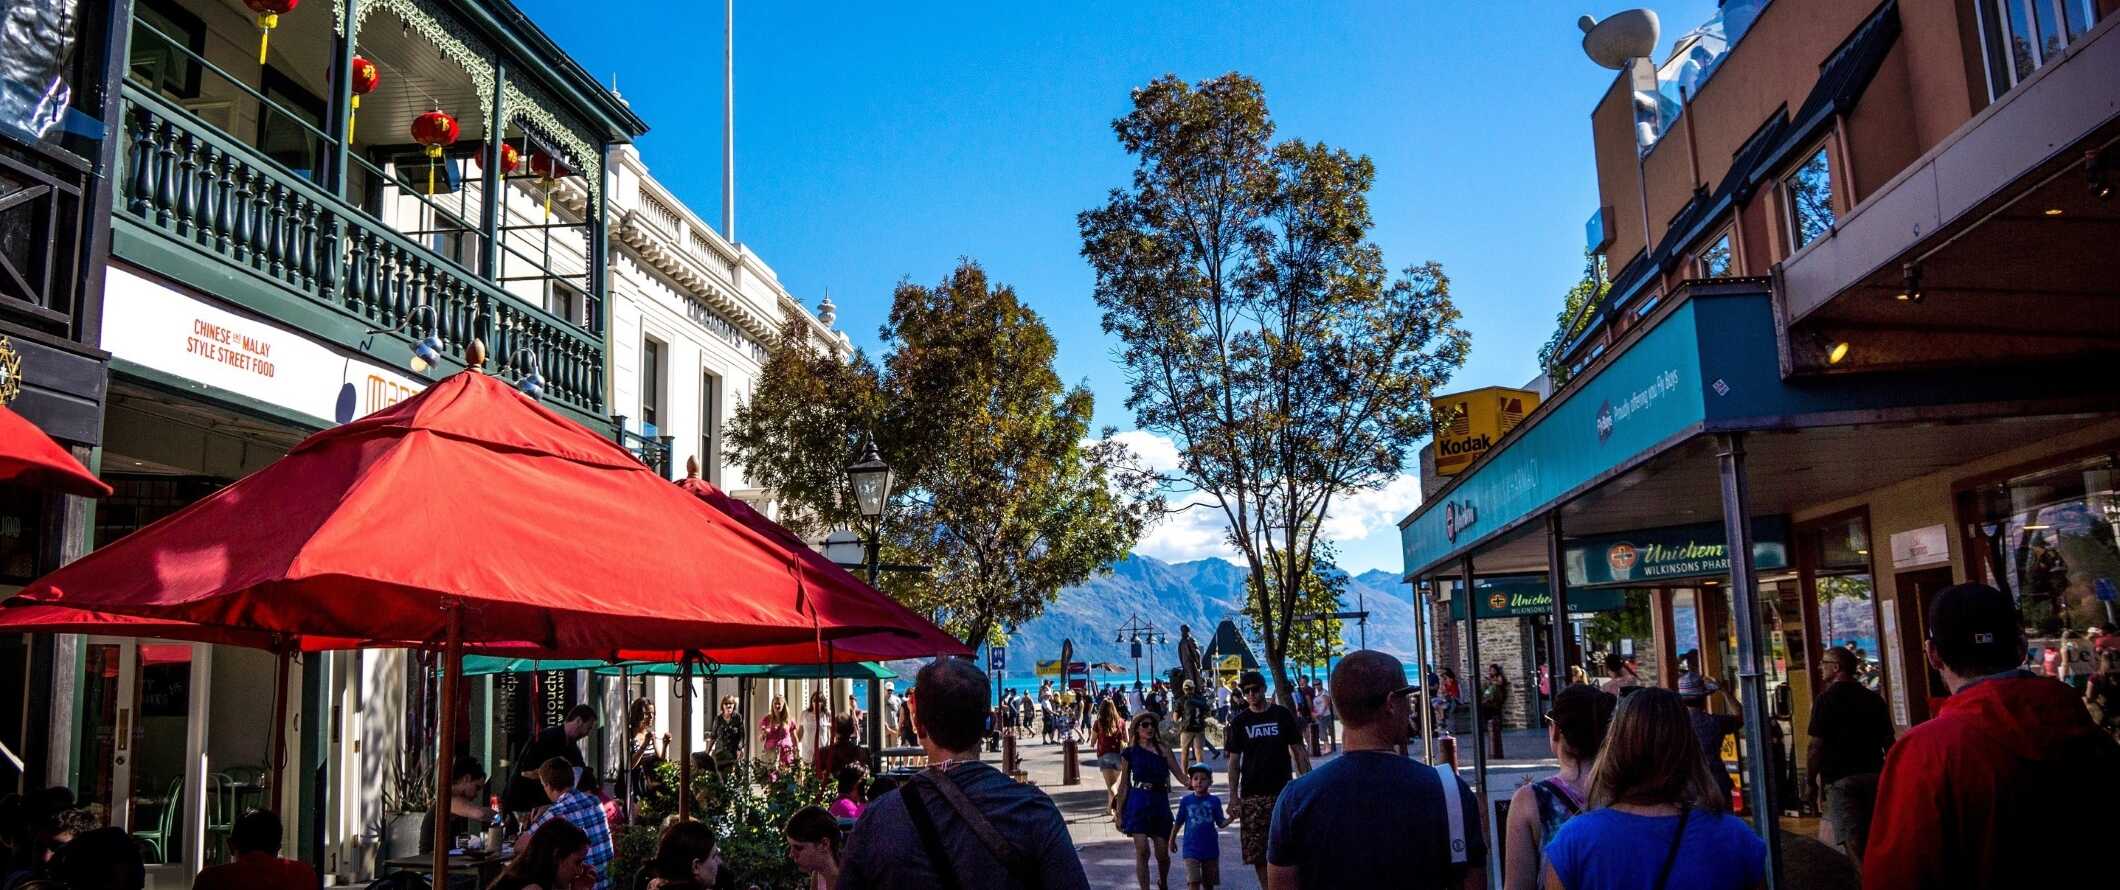 Pessoas caminham pelas ruas da histórica Queenstown, Nova Zelândia, com um lago e montanhas ao fundo